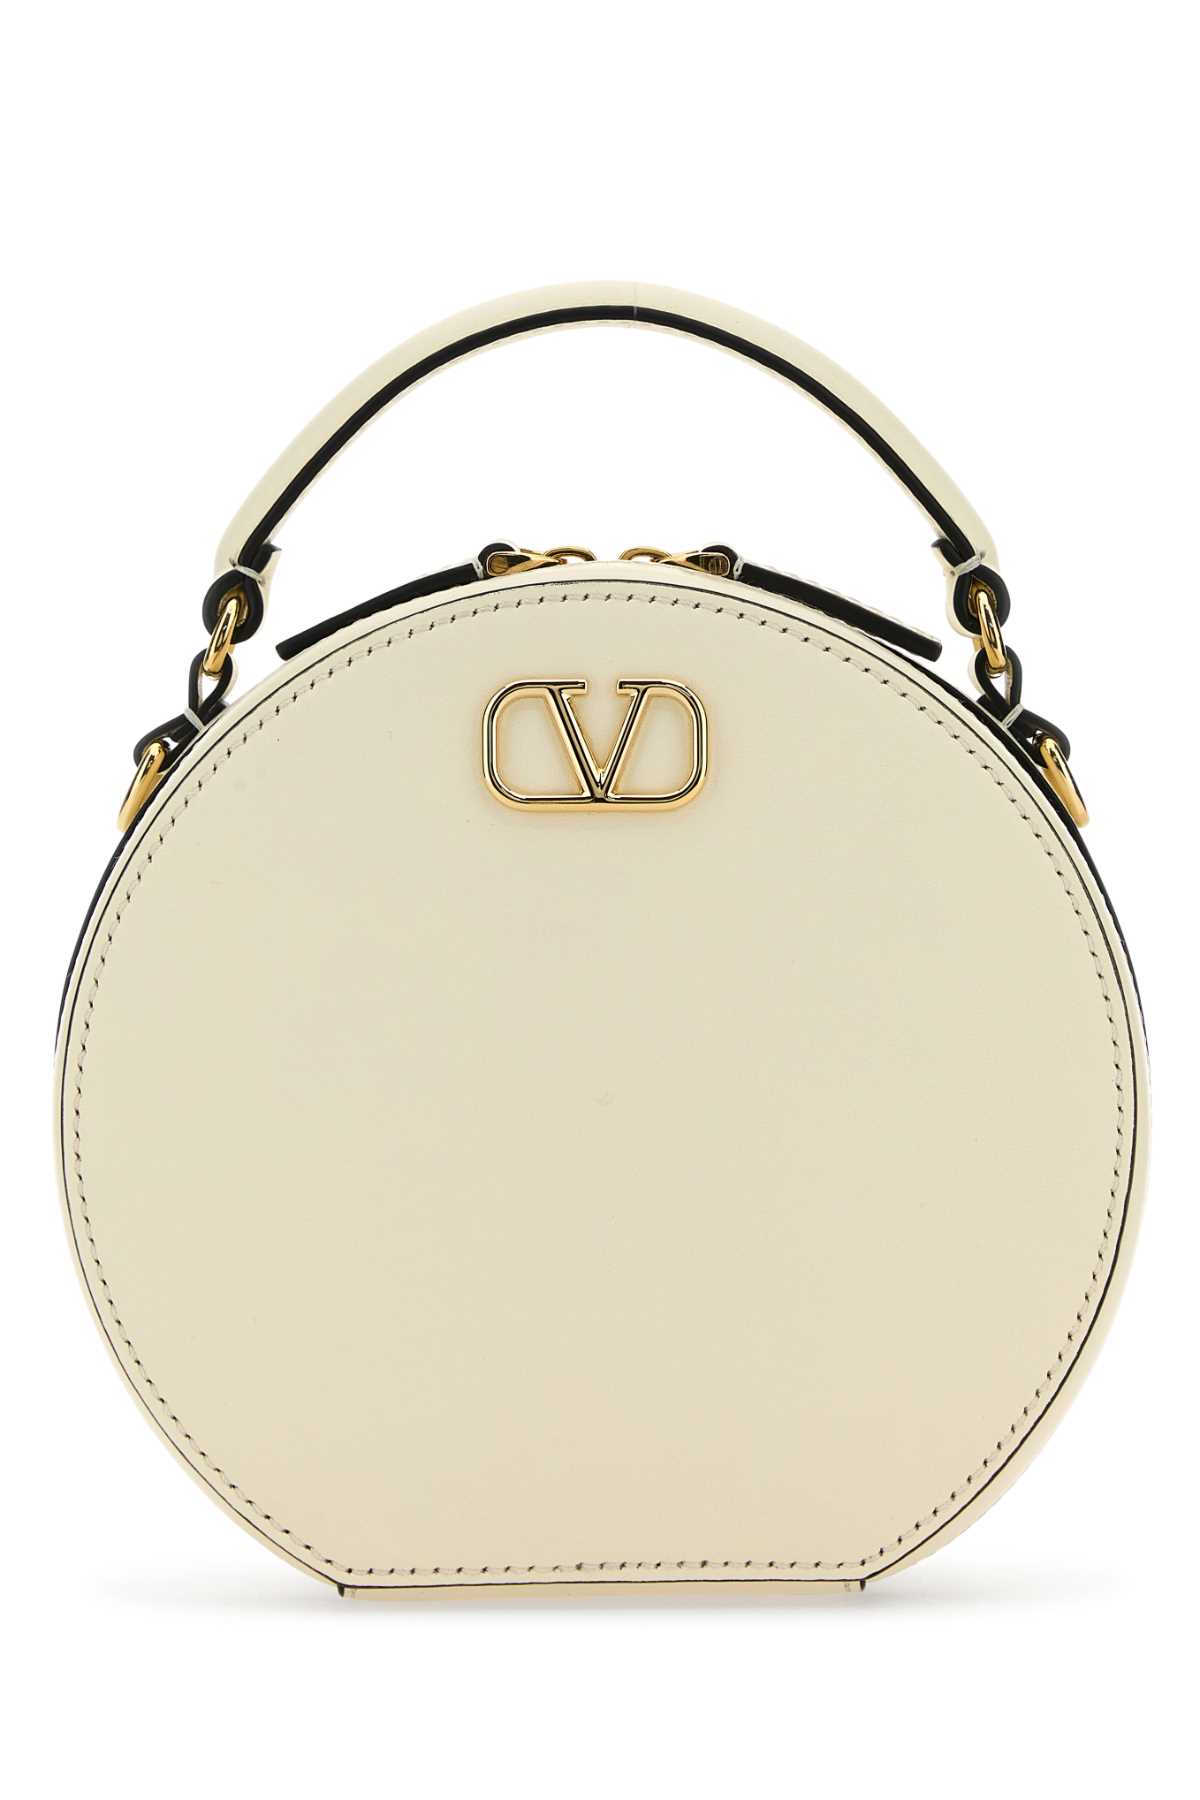 Valentino Garavani Ivory Leather Vlogo Crossbody Bag In Burgundy